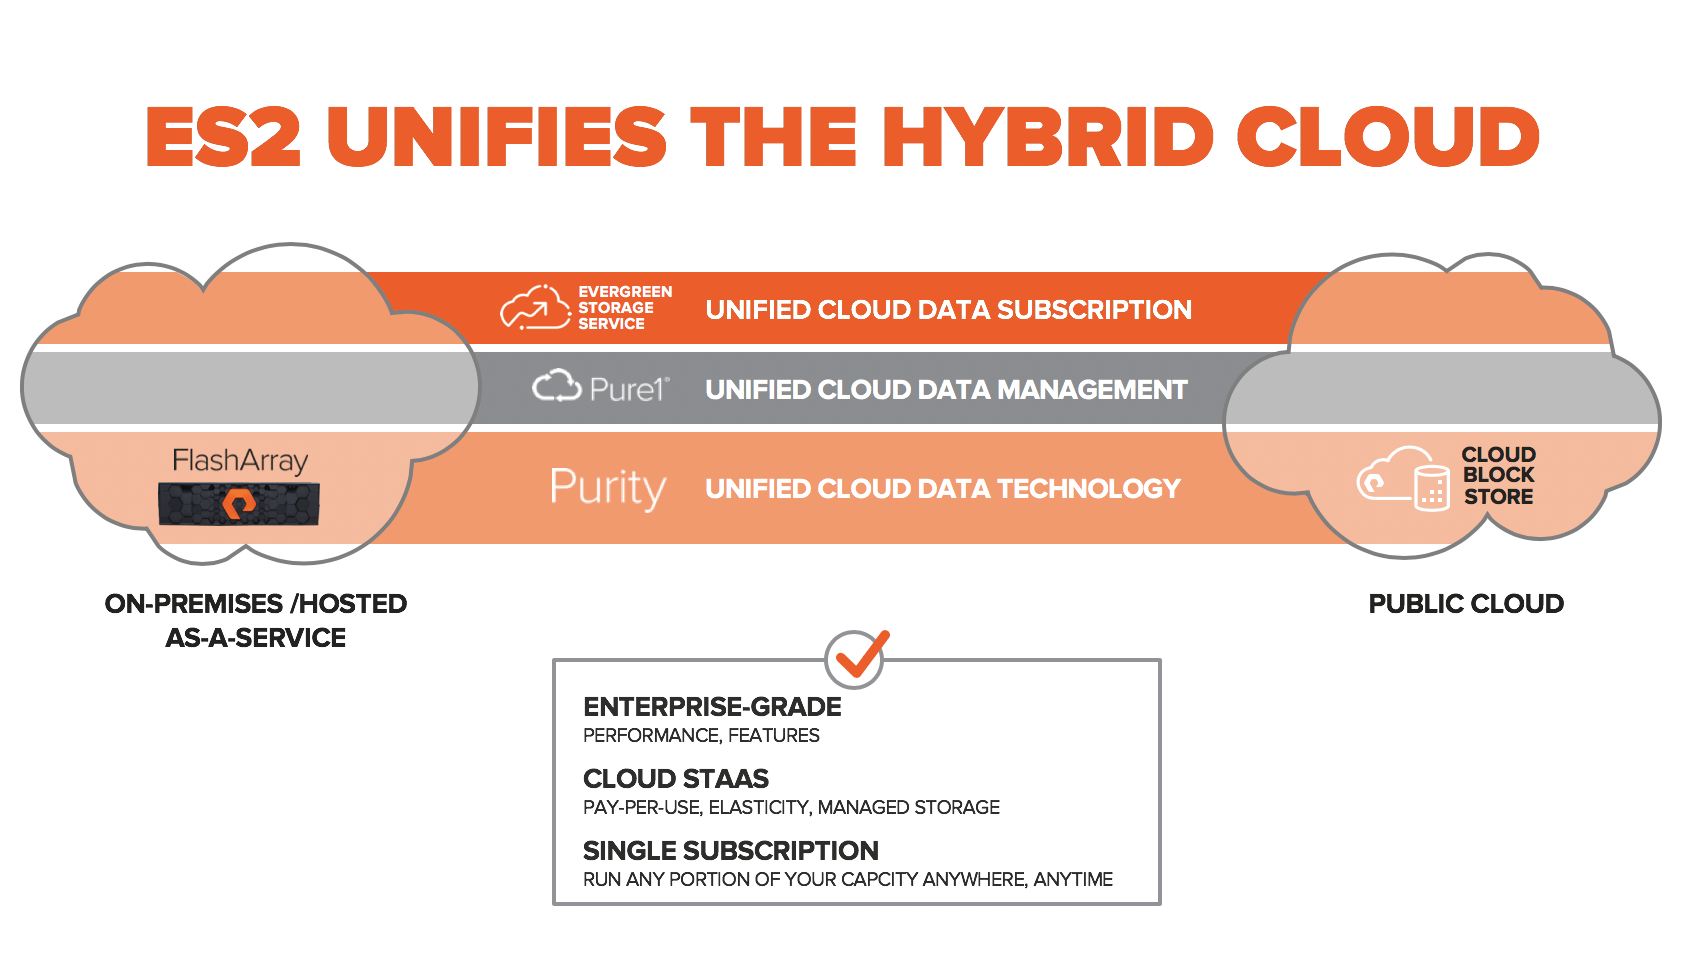 ES2 Unifies Storage in the Hybrid Cloud